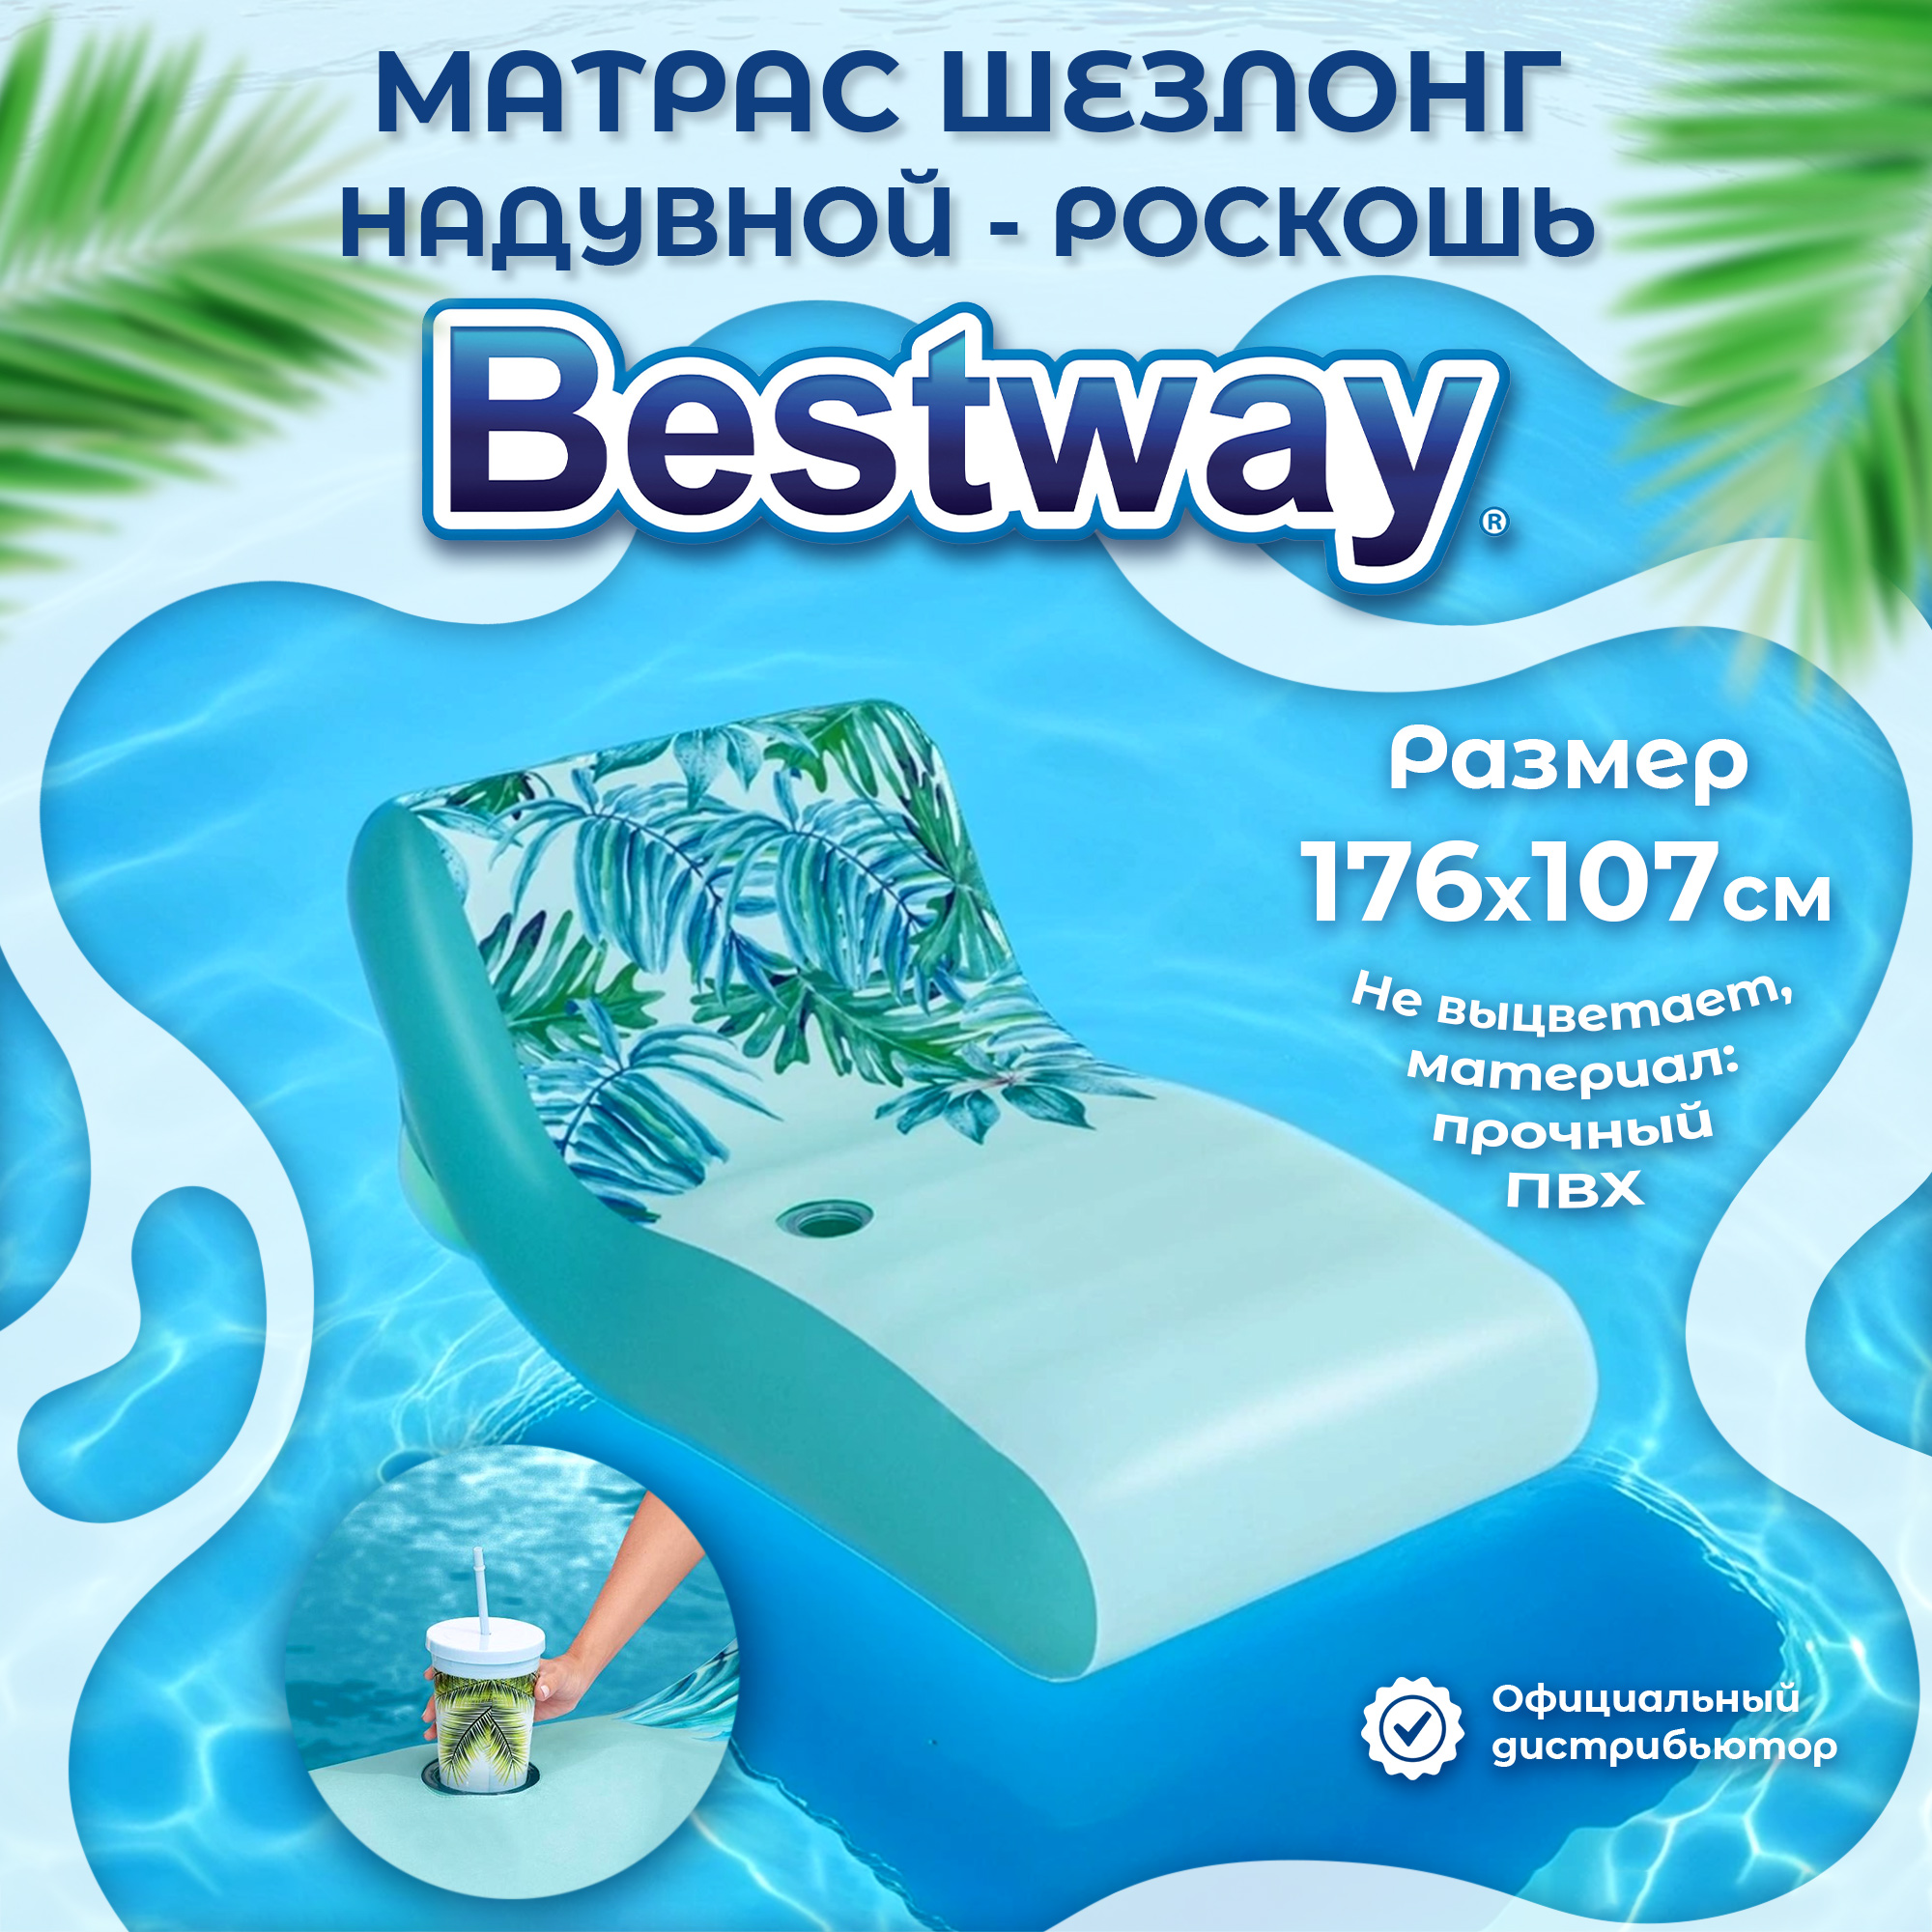 Матрас шезлонг Bestway надувной Роскошь 1,76x1,07 м, цвет голубой - фото 2